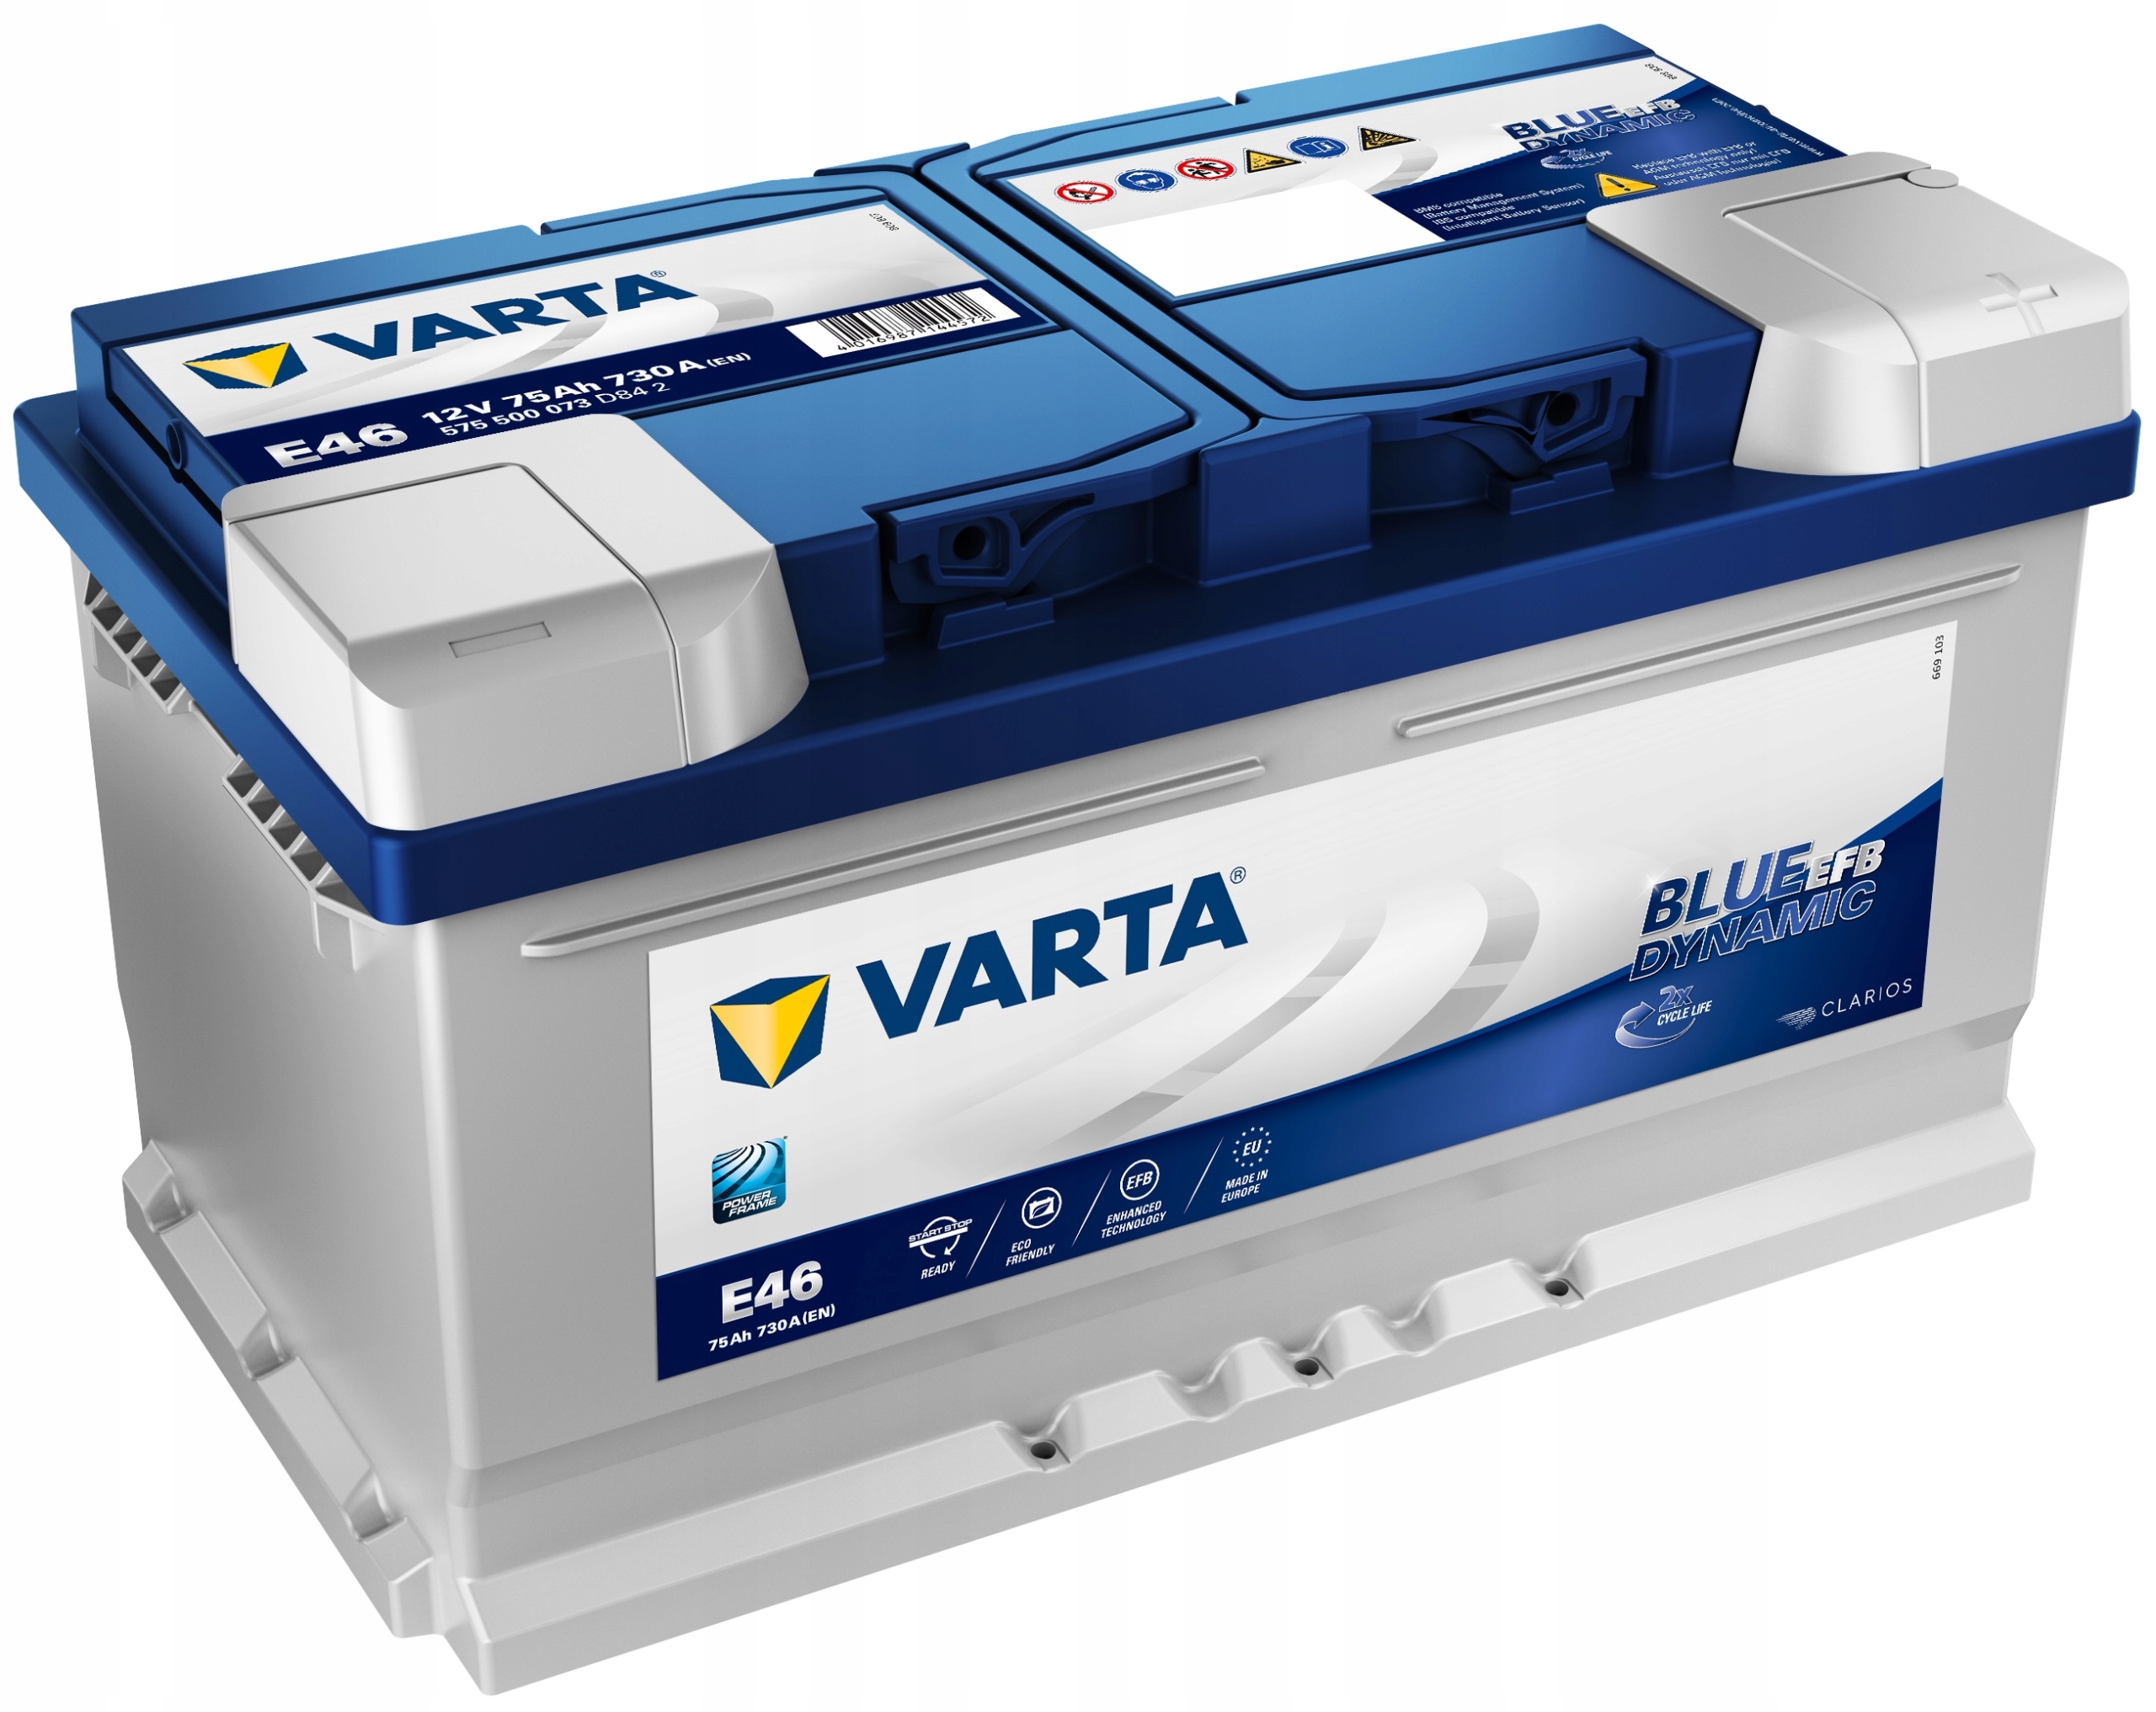 Battery Varta C30 54Ah Varta From 40Ah to 60Ah